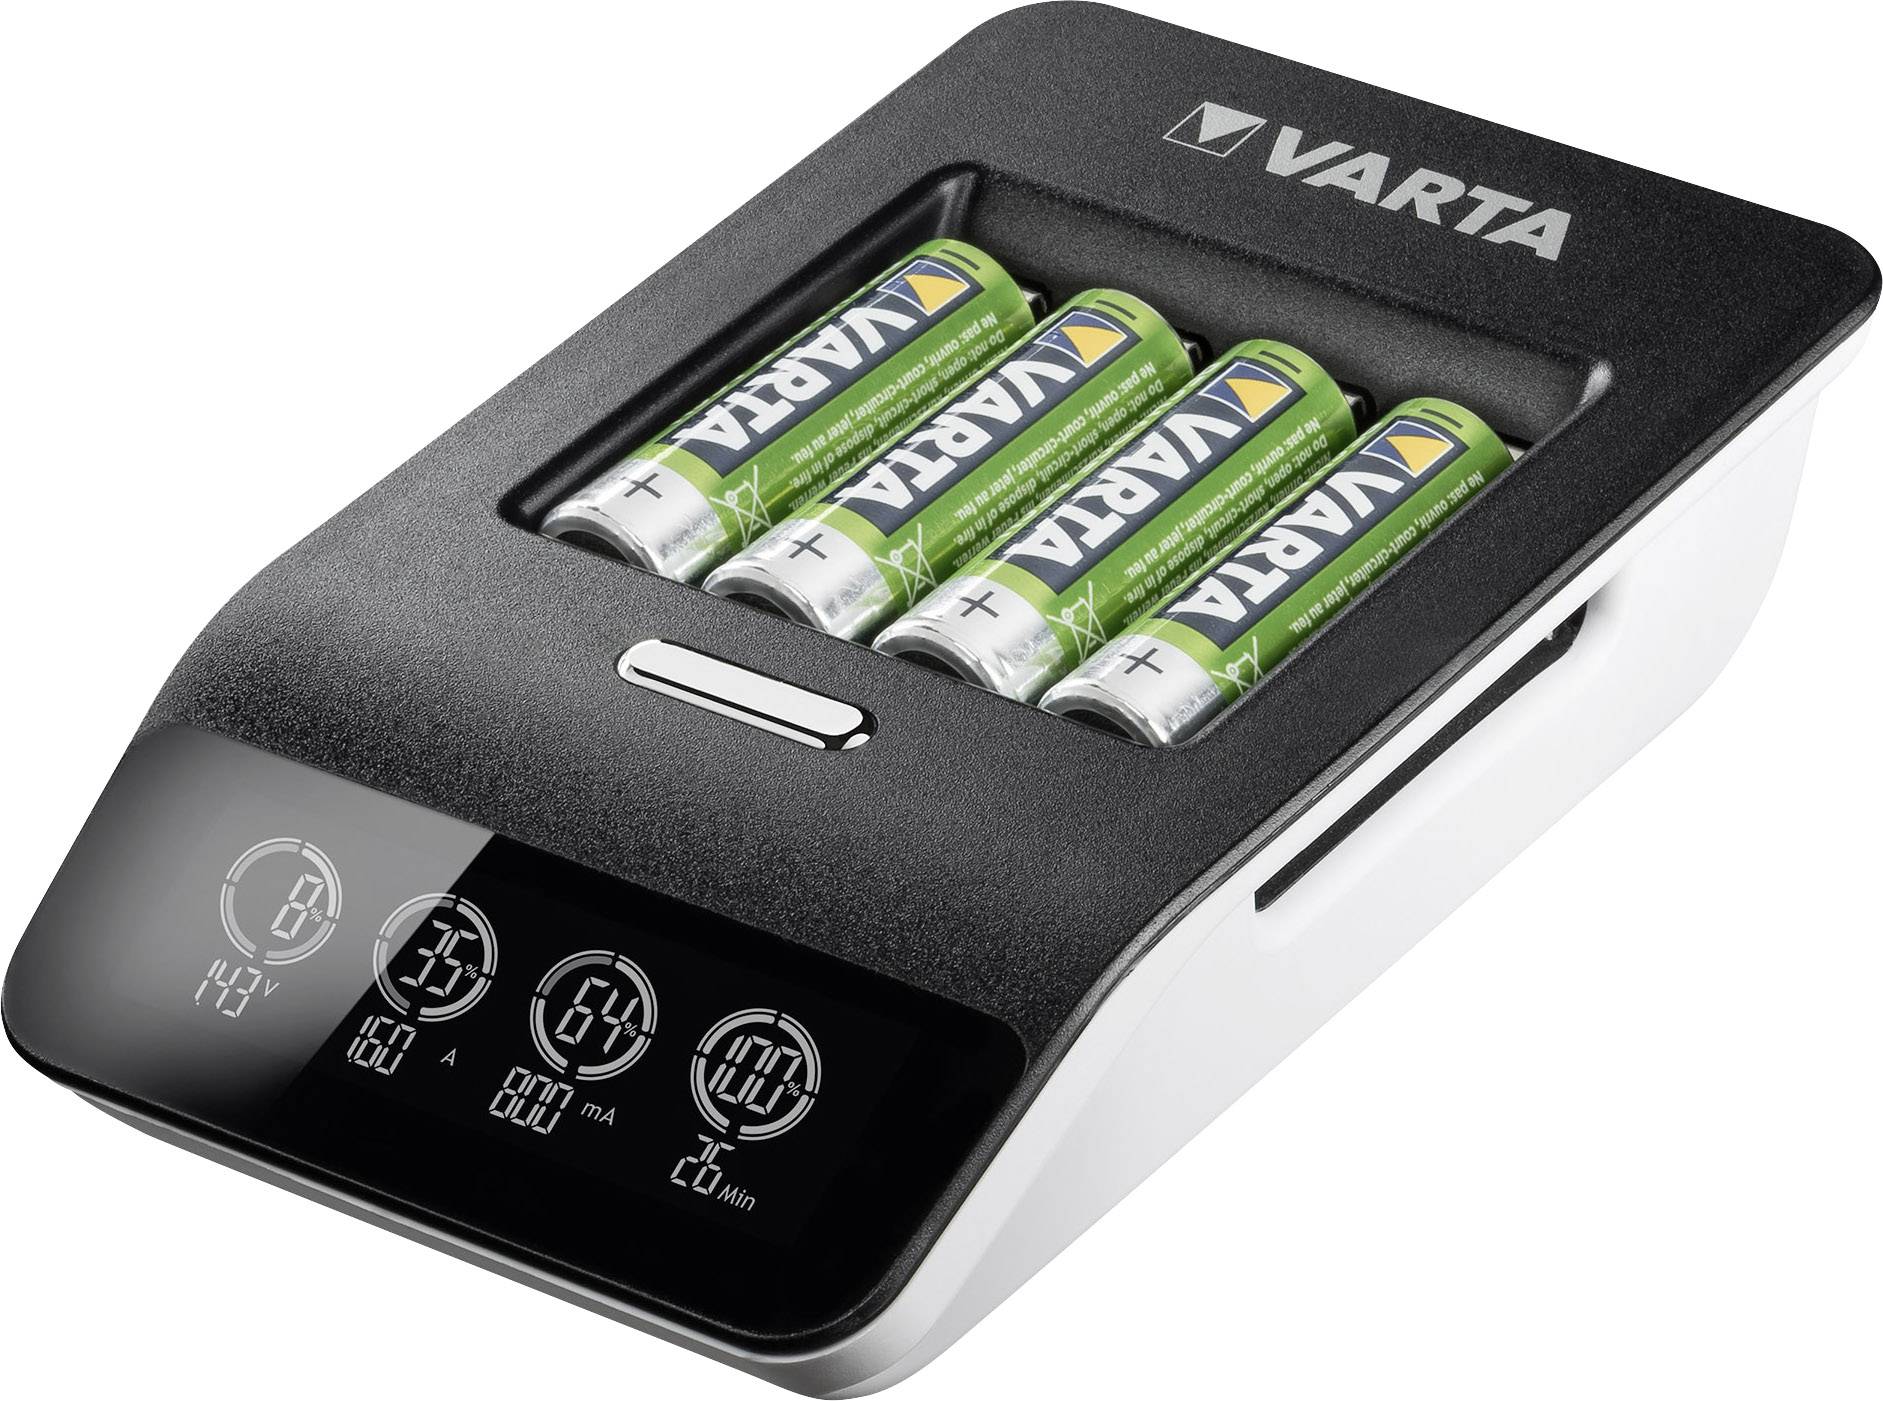 Фаст плюс. Зарядка варта для аккумуляторных батареек. Varta зарядка для батареек LCD Ultra fast Charger+. Зарядное устройство Varta для аккумуляторных батареек. Зарядка для батареек Varta LCD.